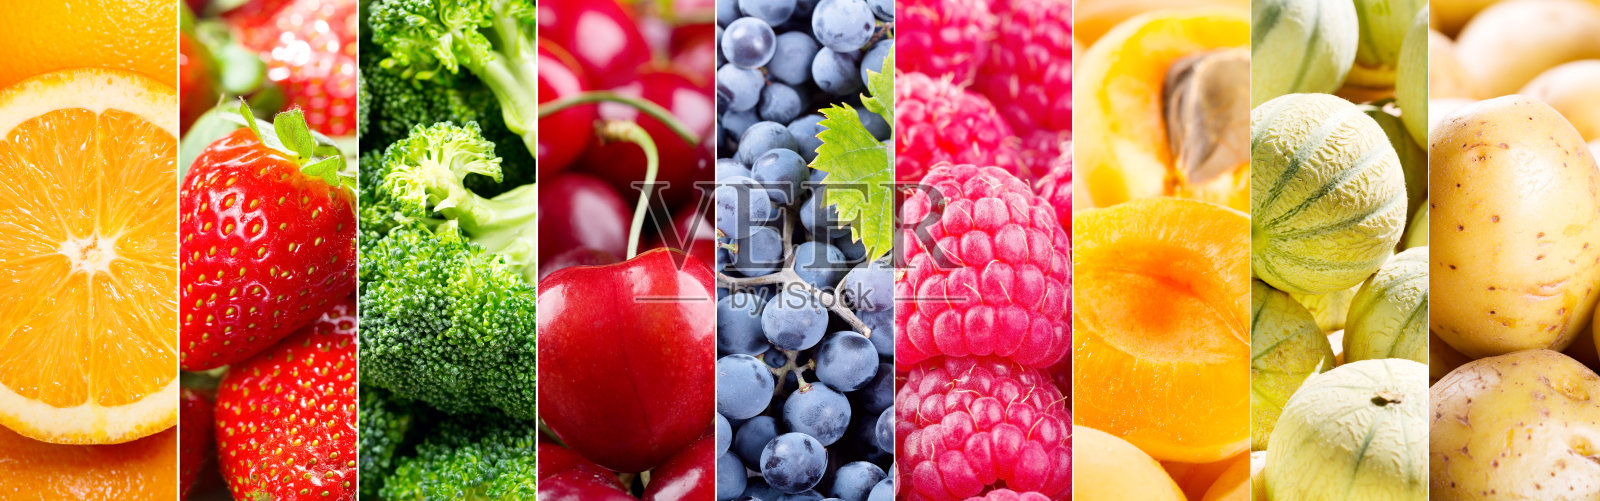 新鲜水果和蔬菜的拼贴画照片摄影图片